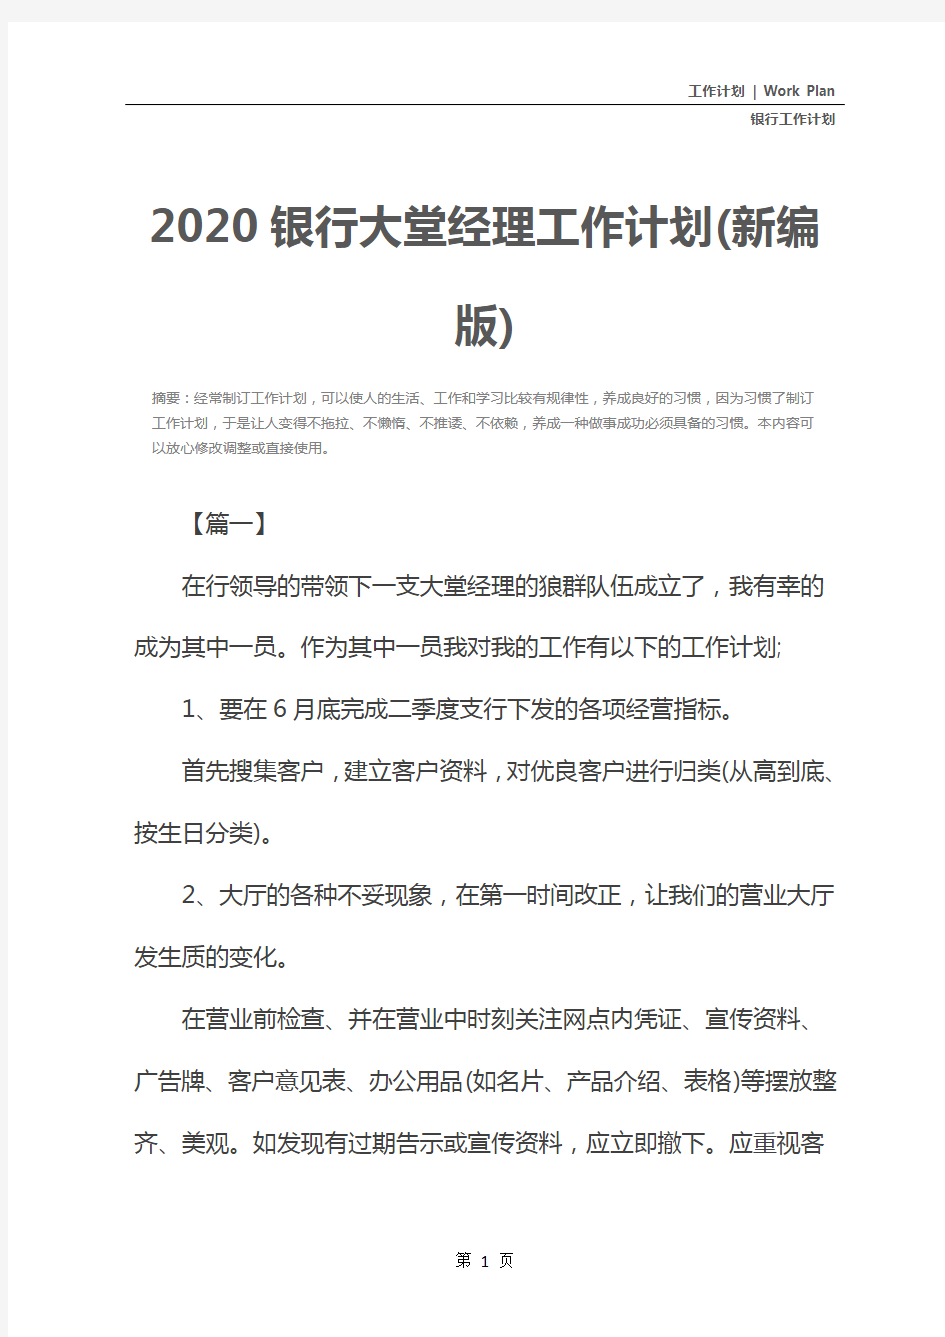 2020银行大堂经理工作计划(新编版)